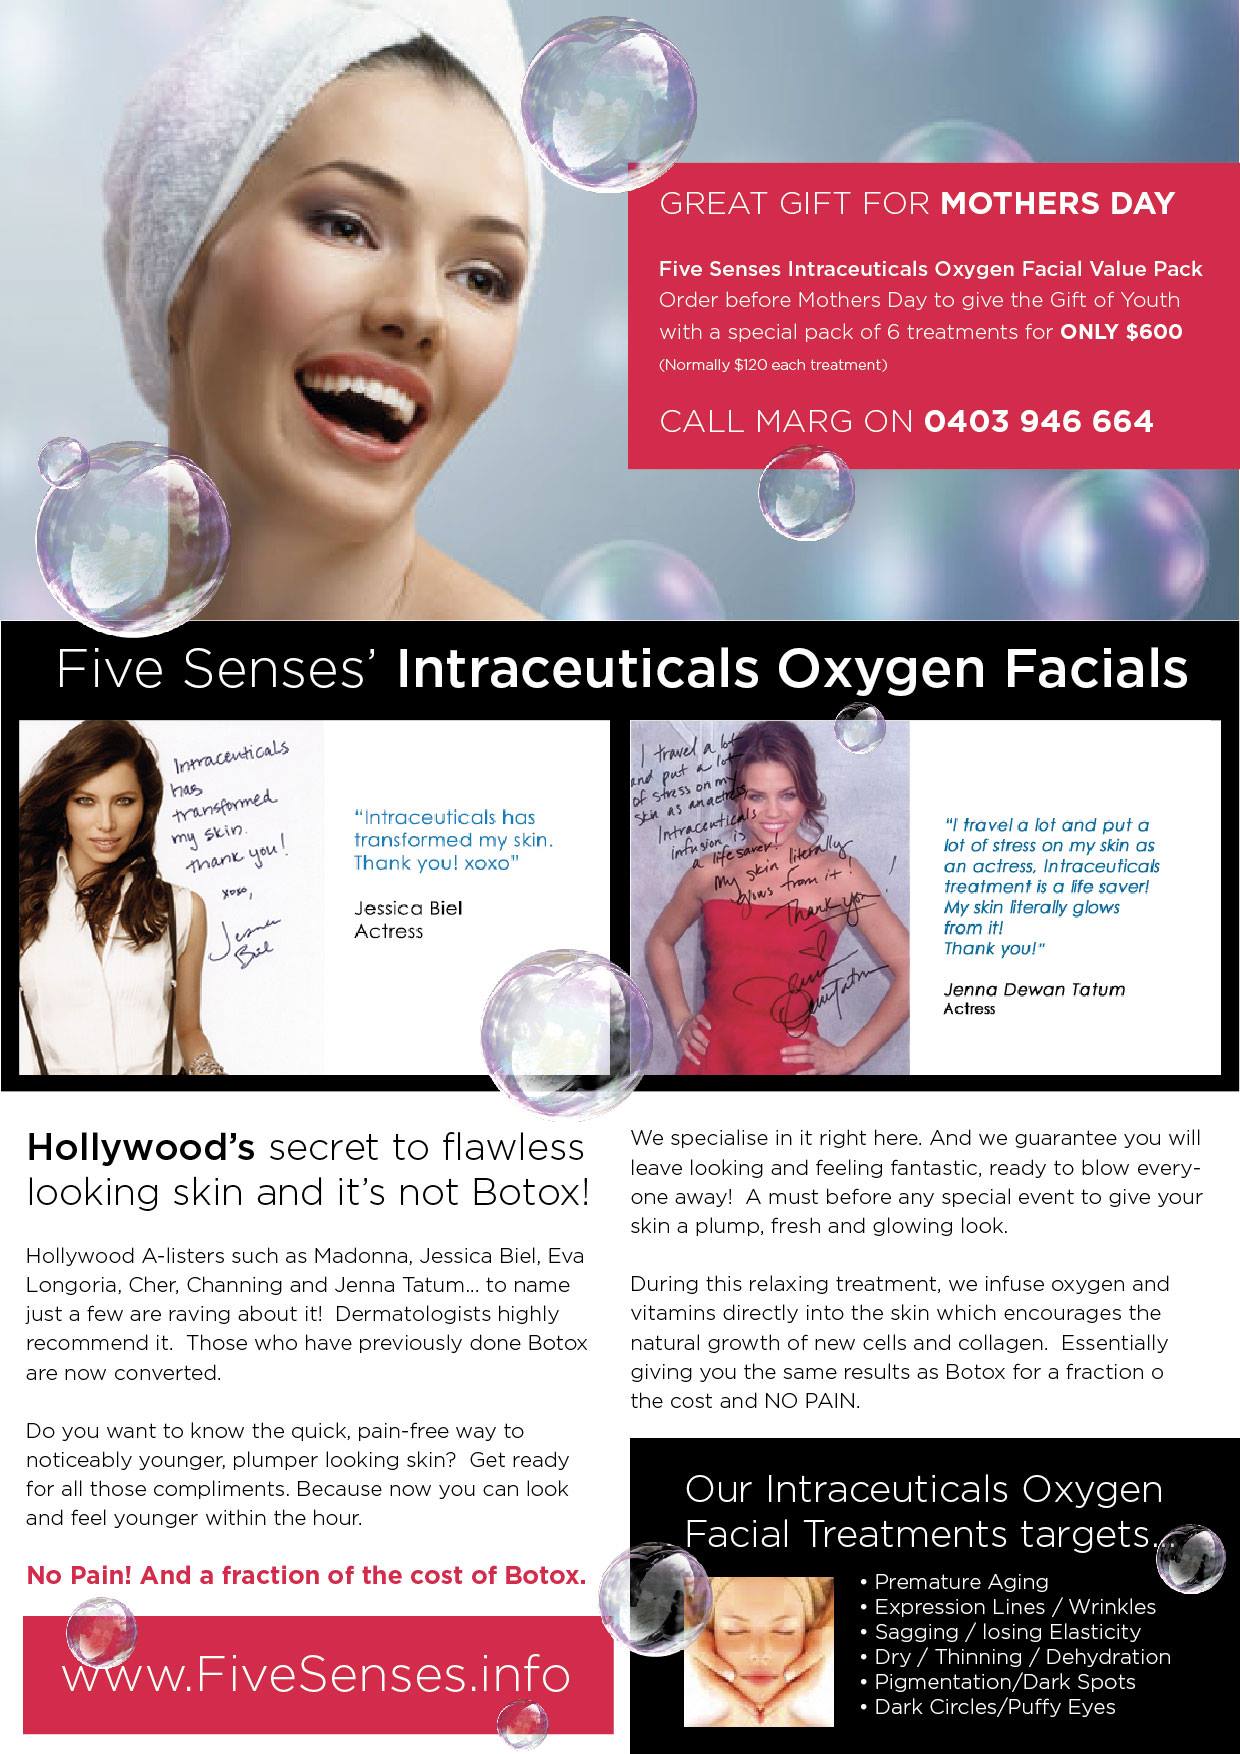 Intraceutcals-Oxygen-Facials.jpg